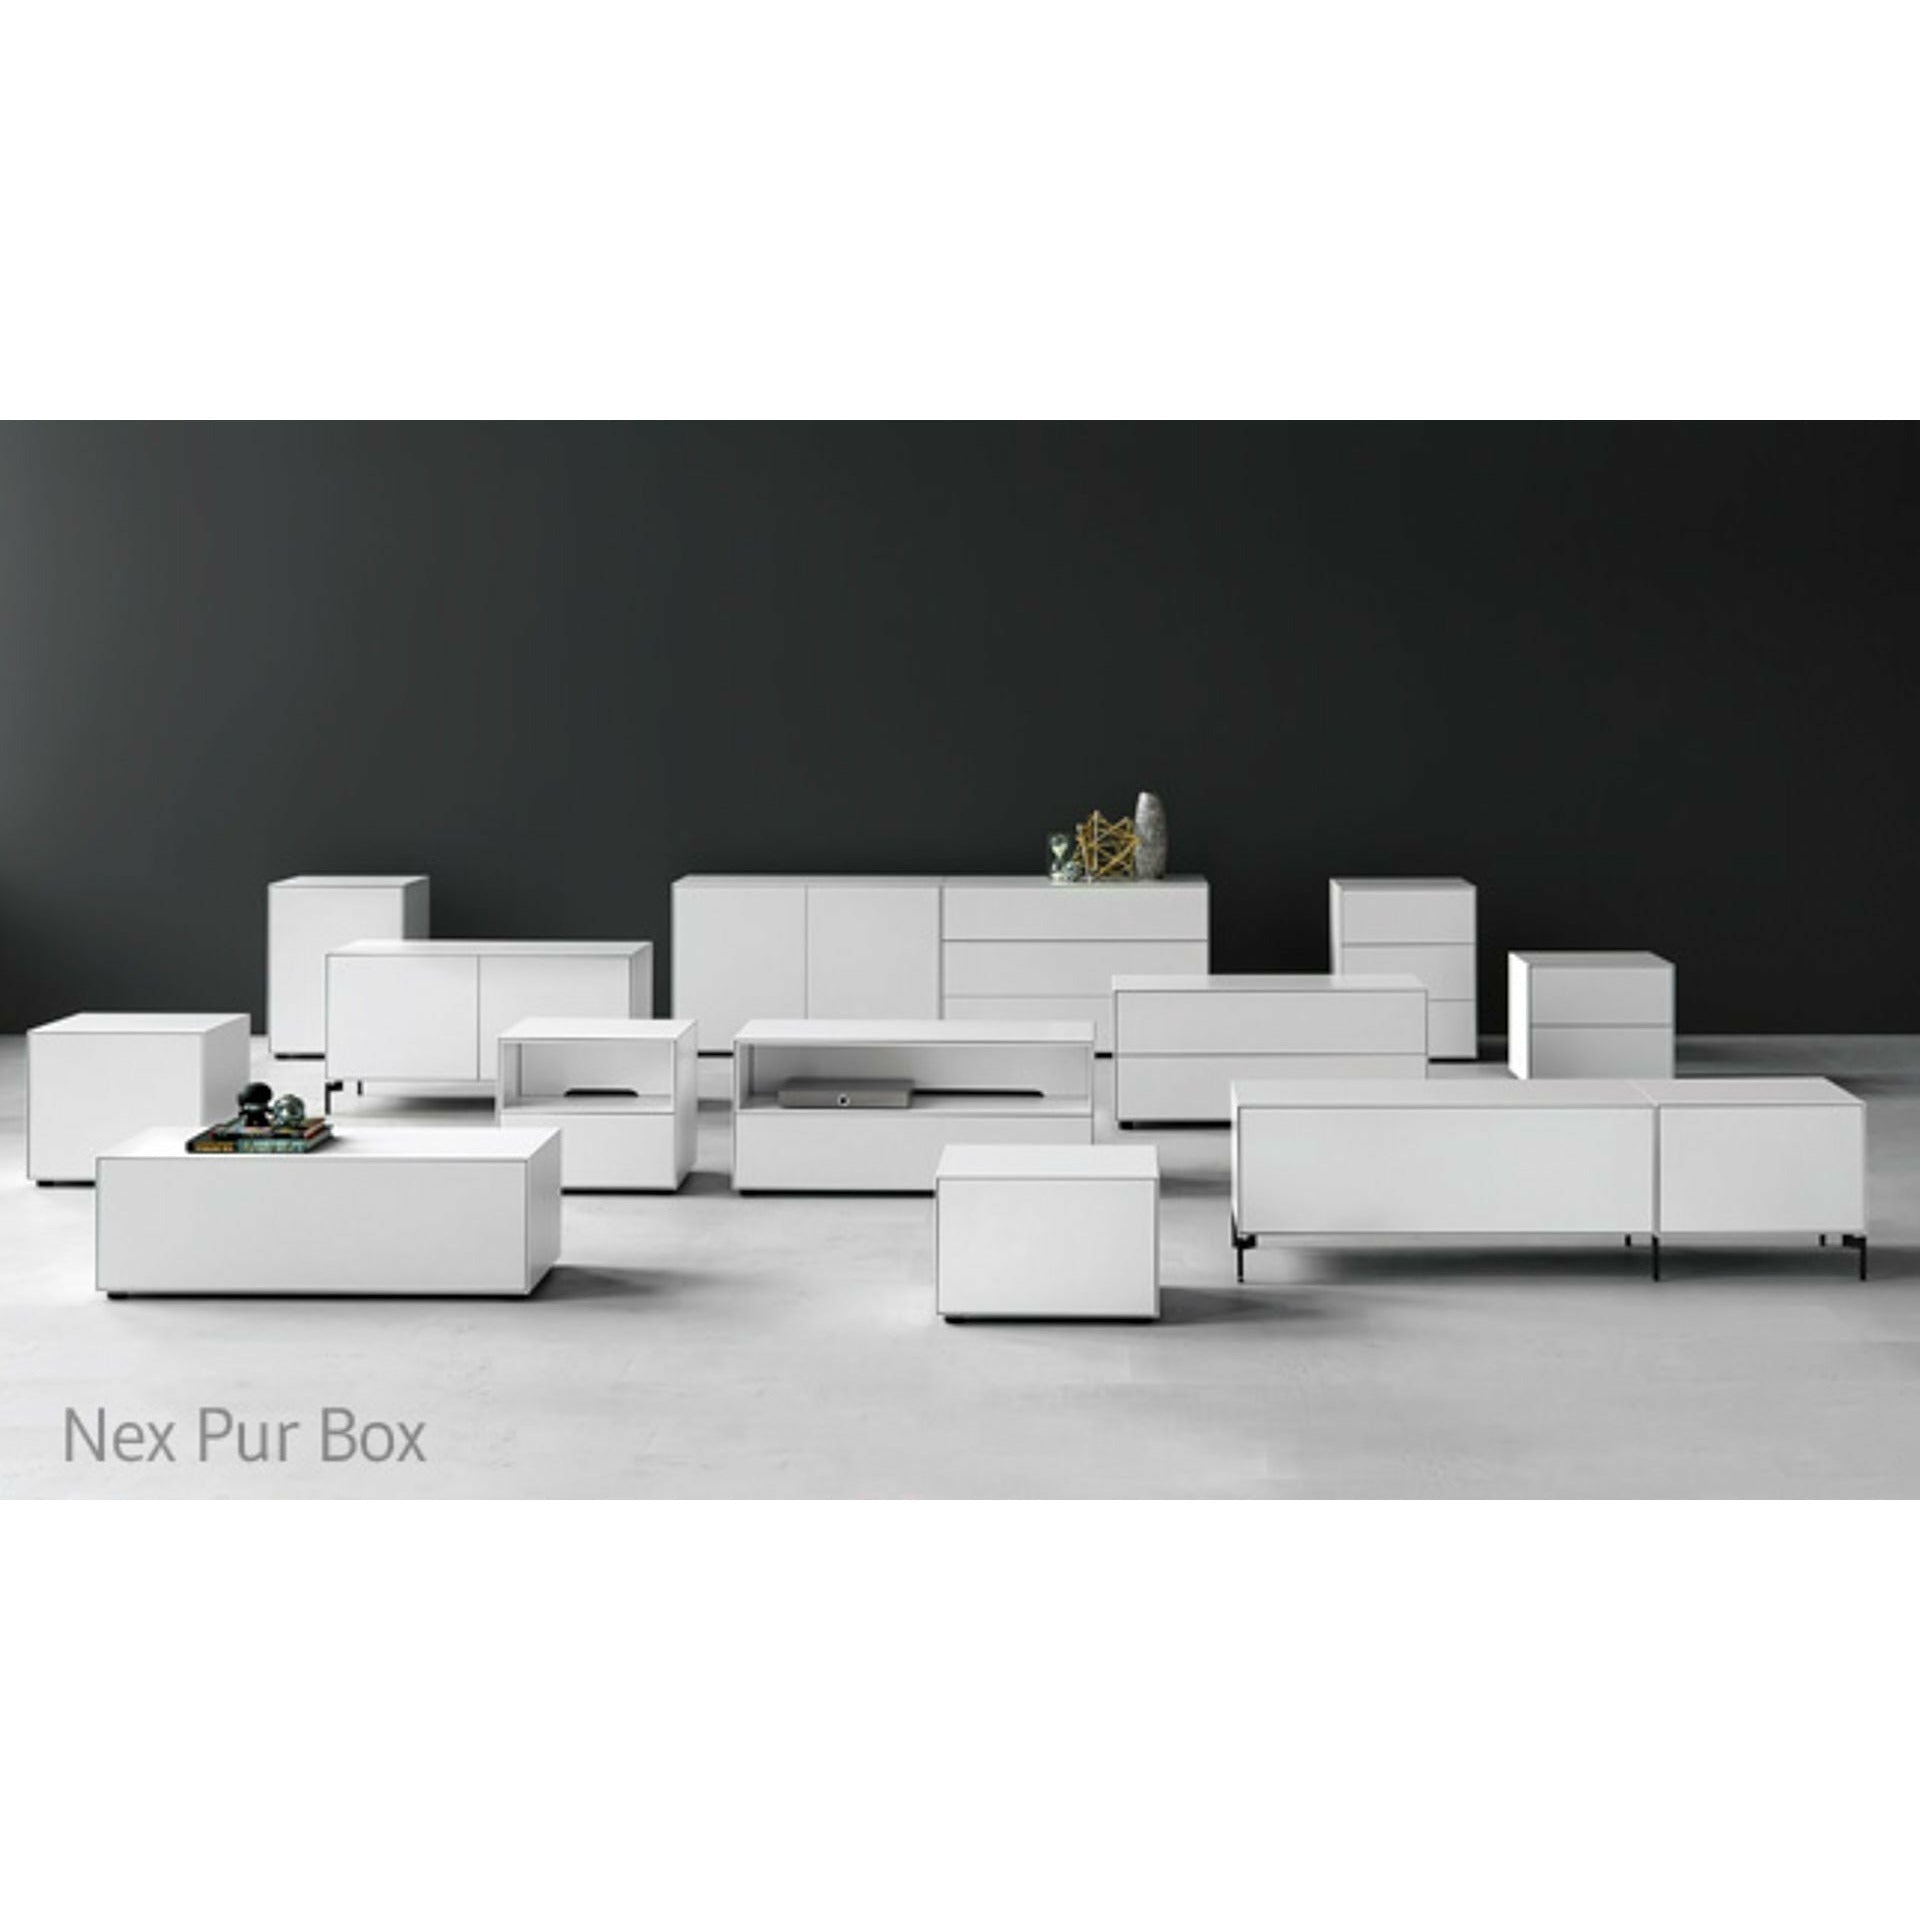 Piure Nex Pur Box Media Flap HXB 37,5x120 cm, 1 hylla